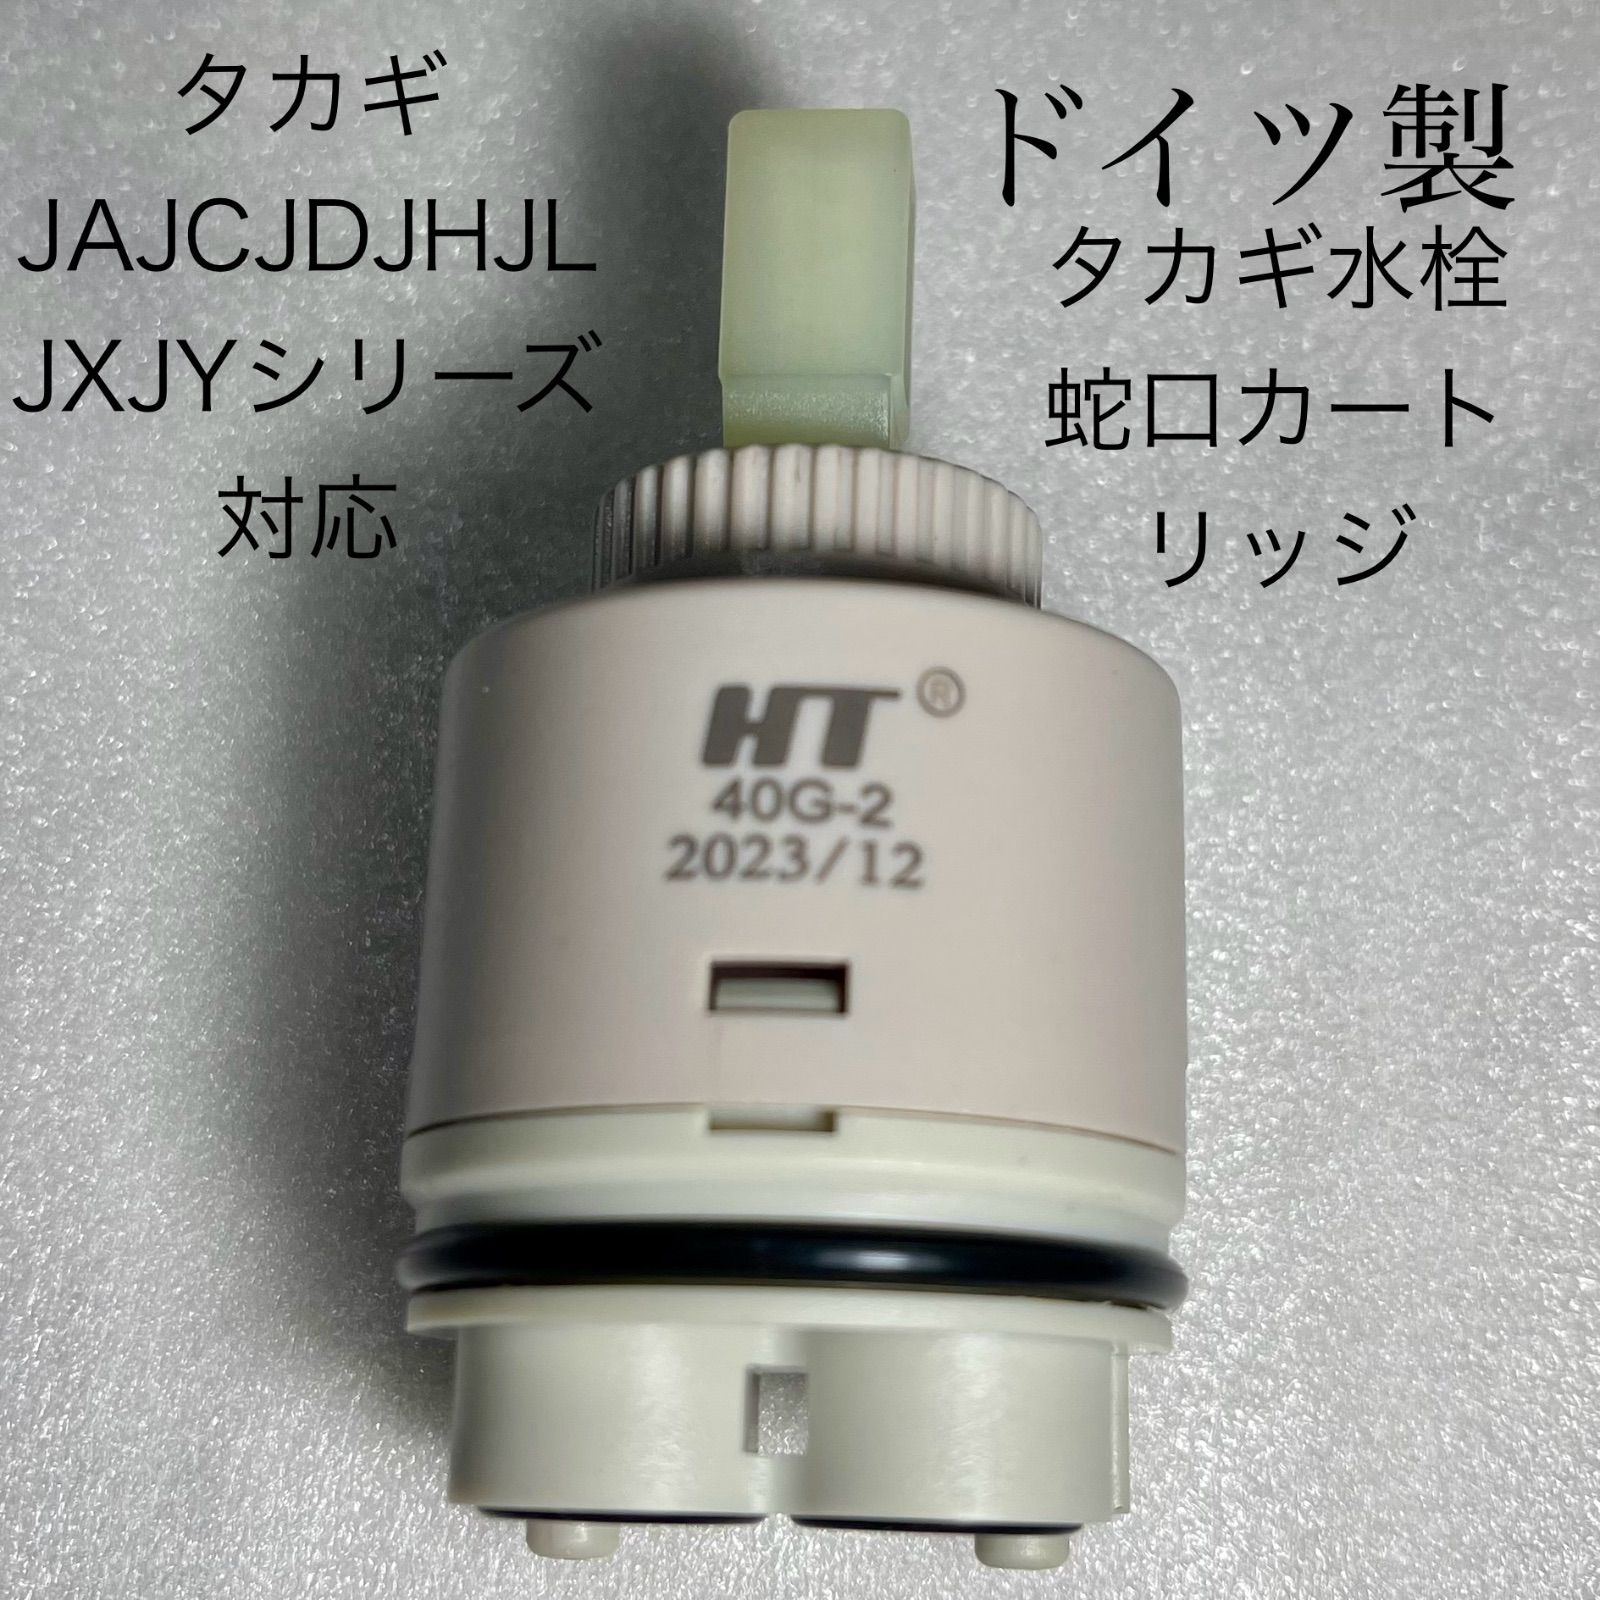 タカギ水栓蛇口カートリッジタカギ JA JC JD JH JL JX JYシリーズ対応 